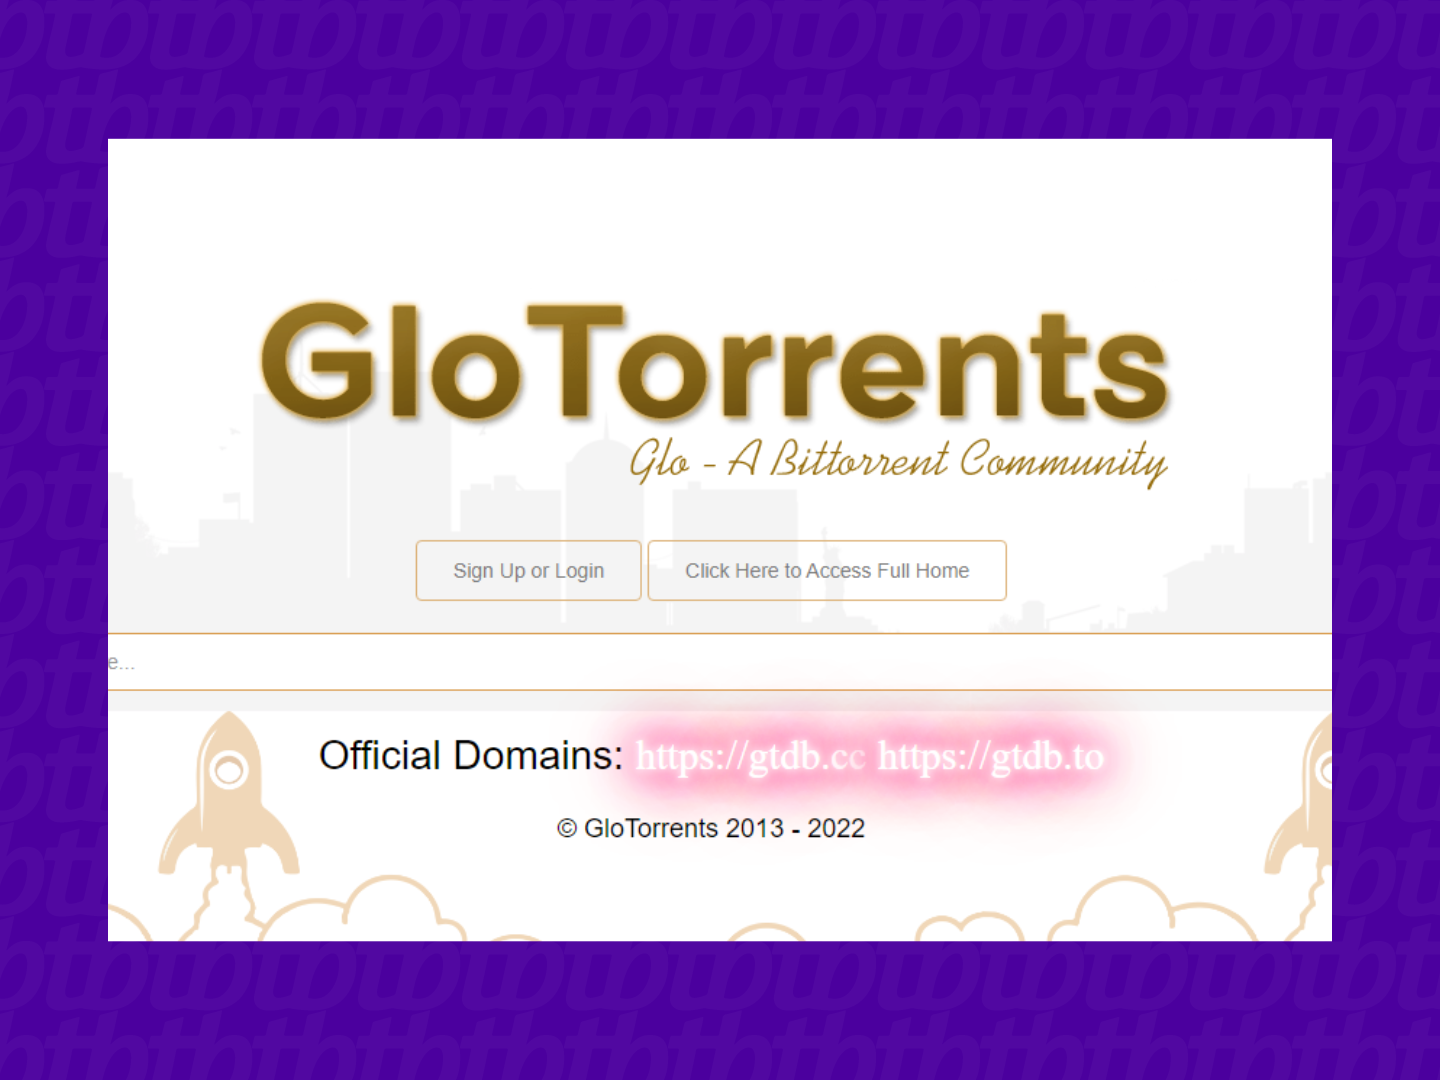 Pirate Bay caiu? 10 alternativas para torrents – Tecnoblog